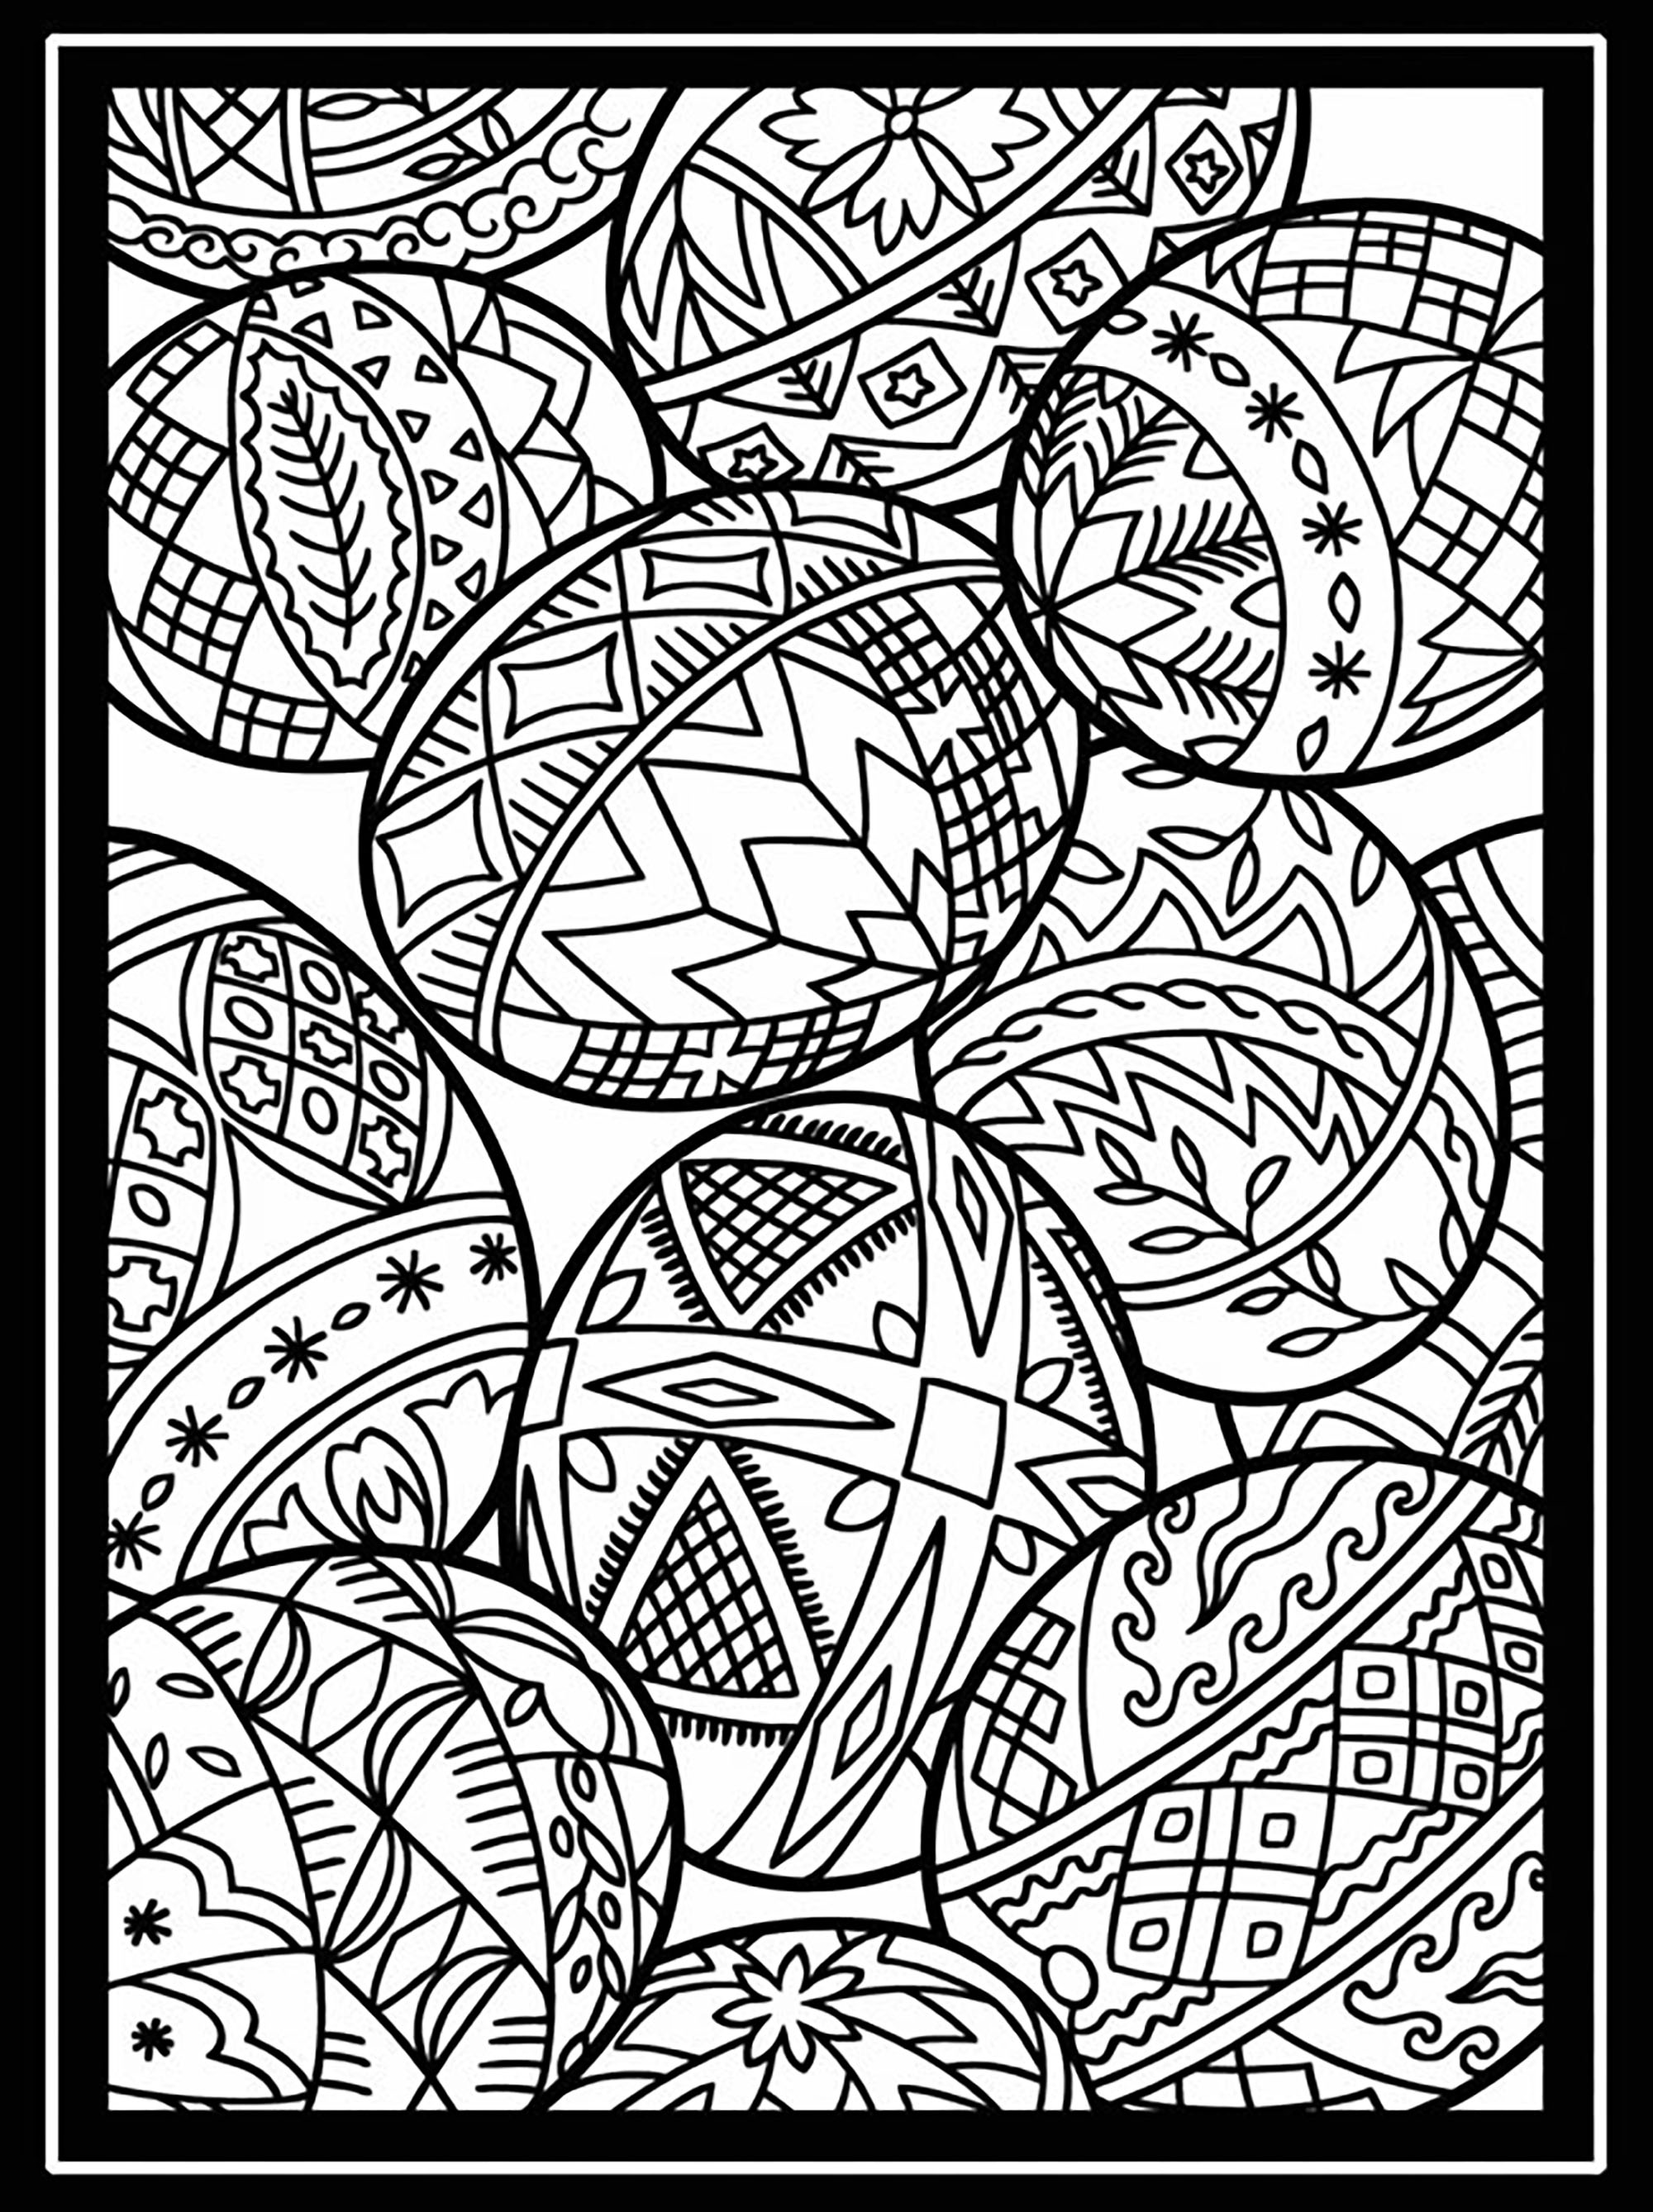 Oeufs de Pâques avec large bordure, Artiste : Dover Publications   Source : doverpublications